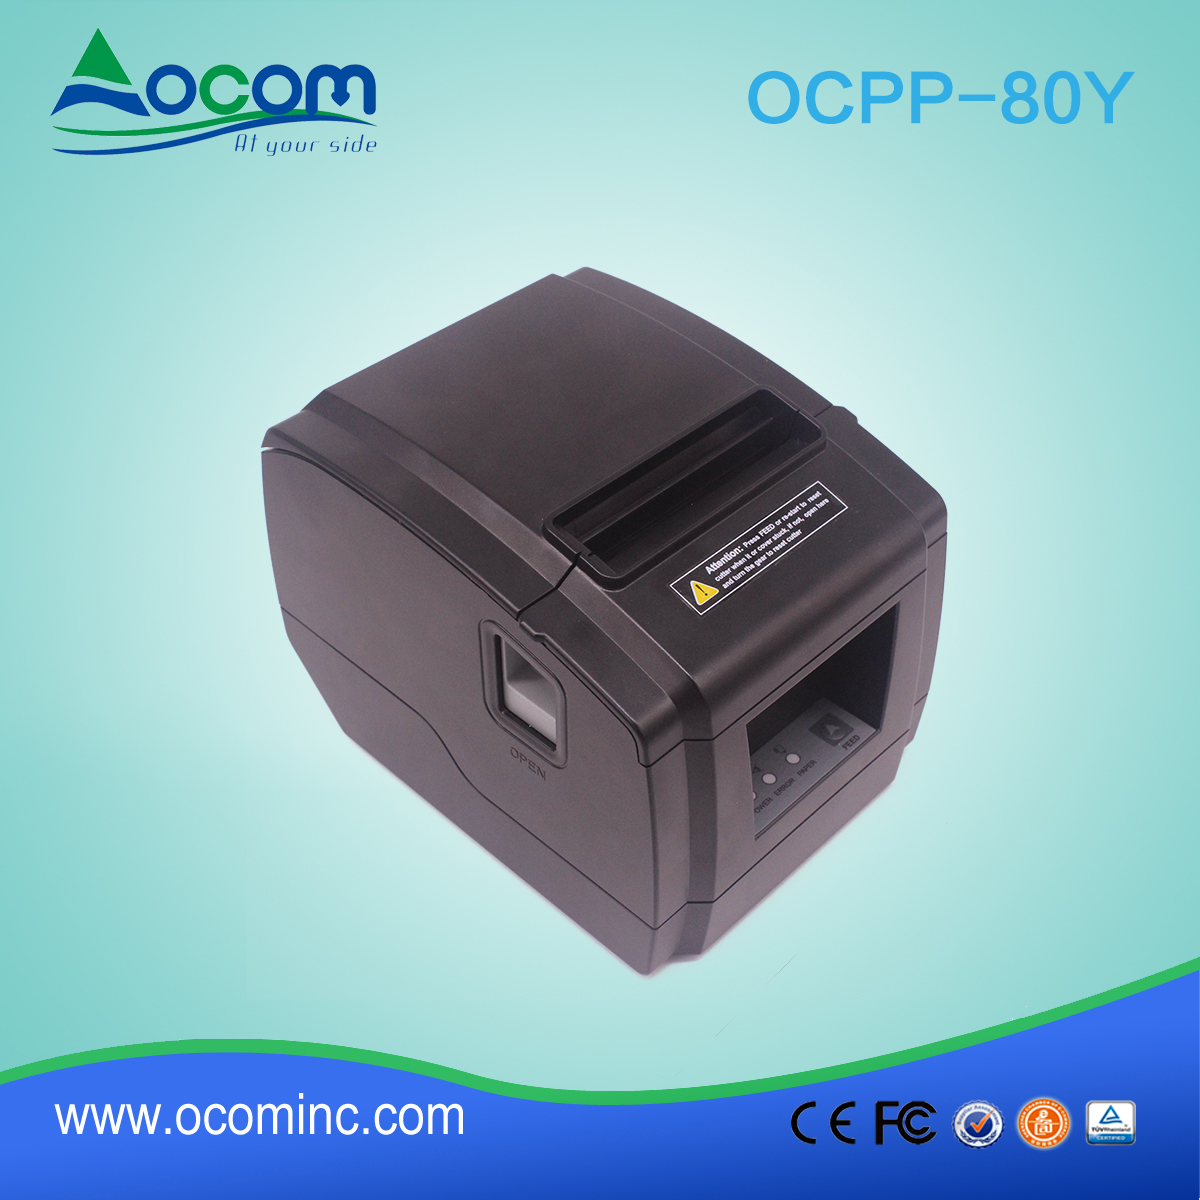 OCPP-80Y - niska cena 80mm drukarka pokwitowań termicznych do sprzedaży hurtowej